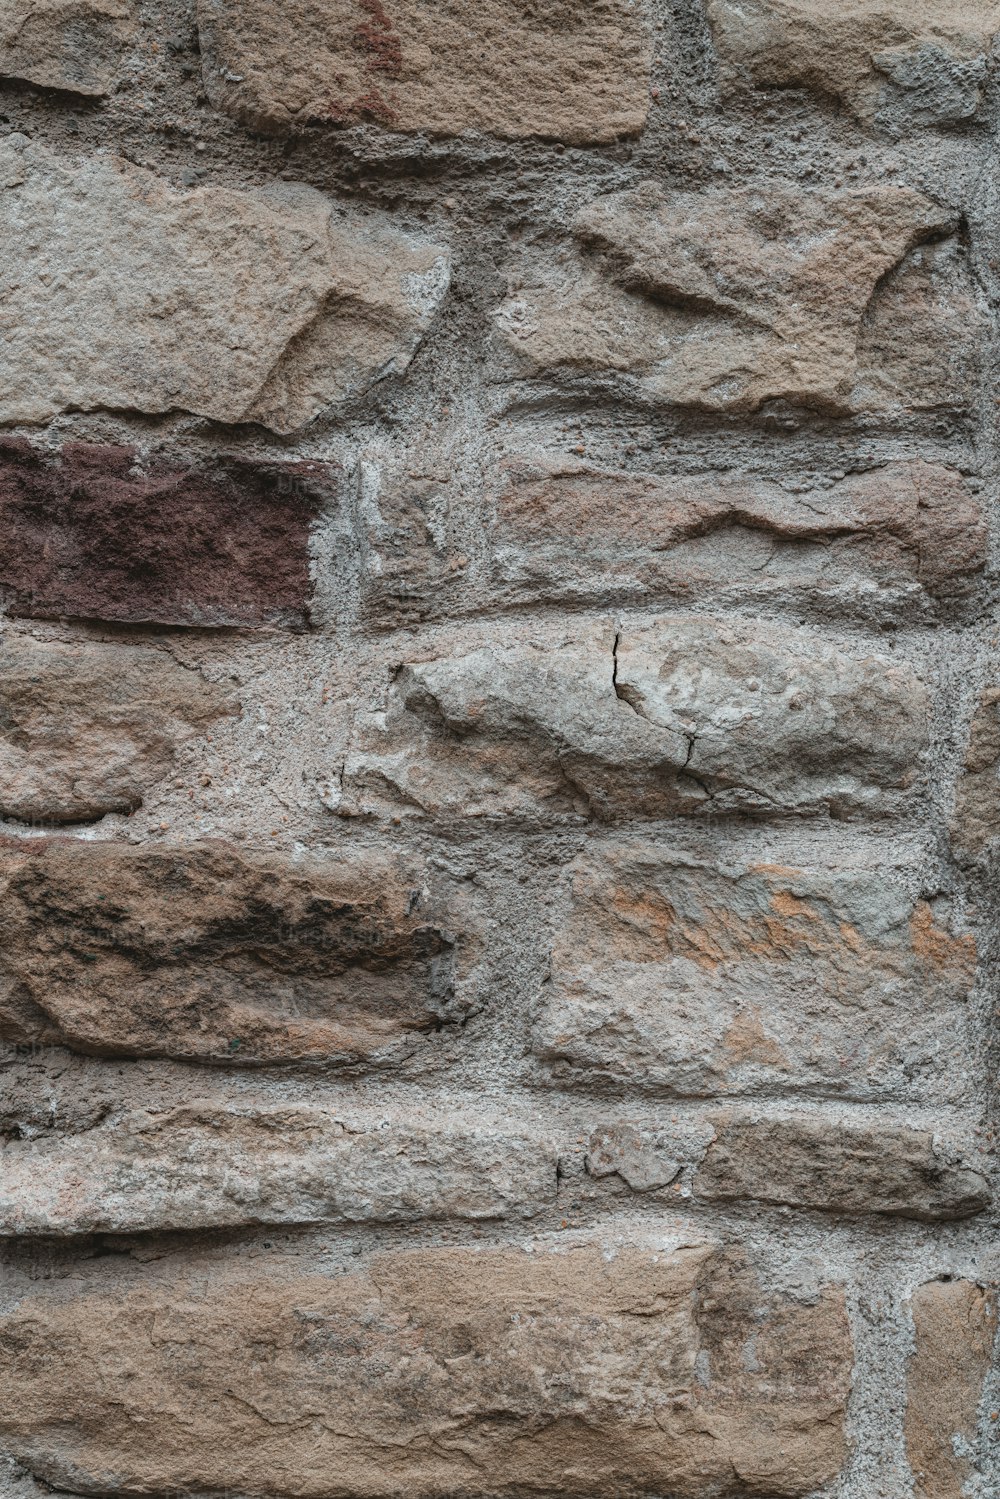 um close up de uma parede de tijolos com um relógio sobre ele